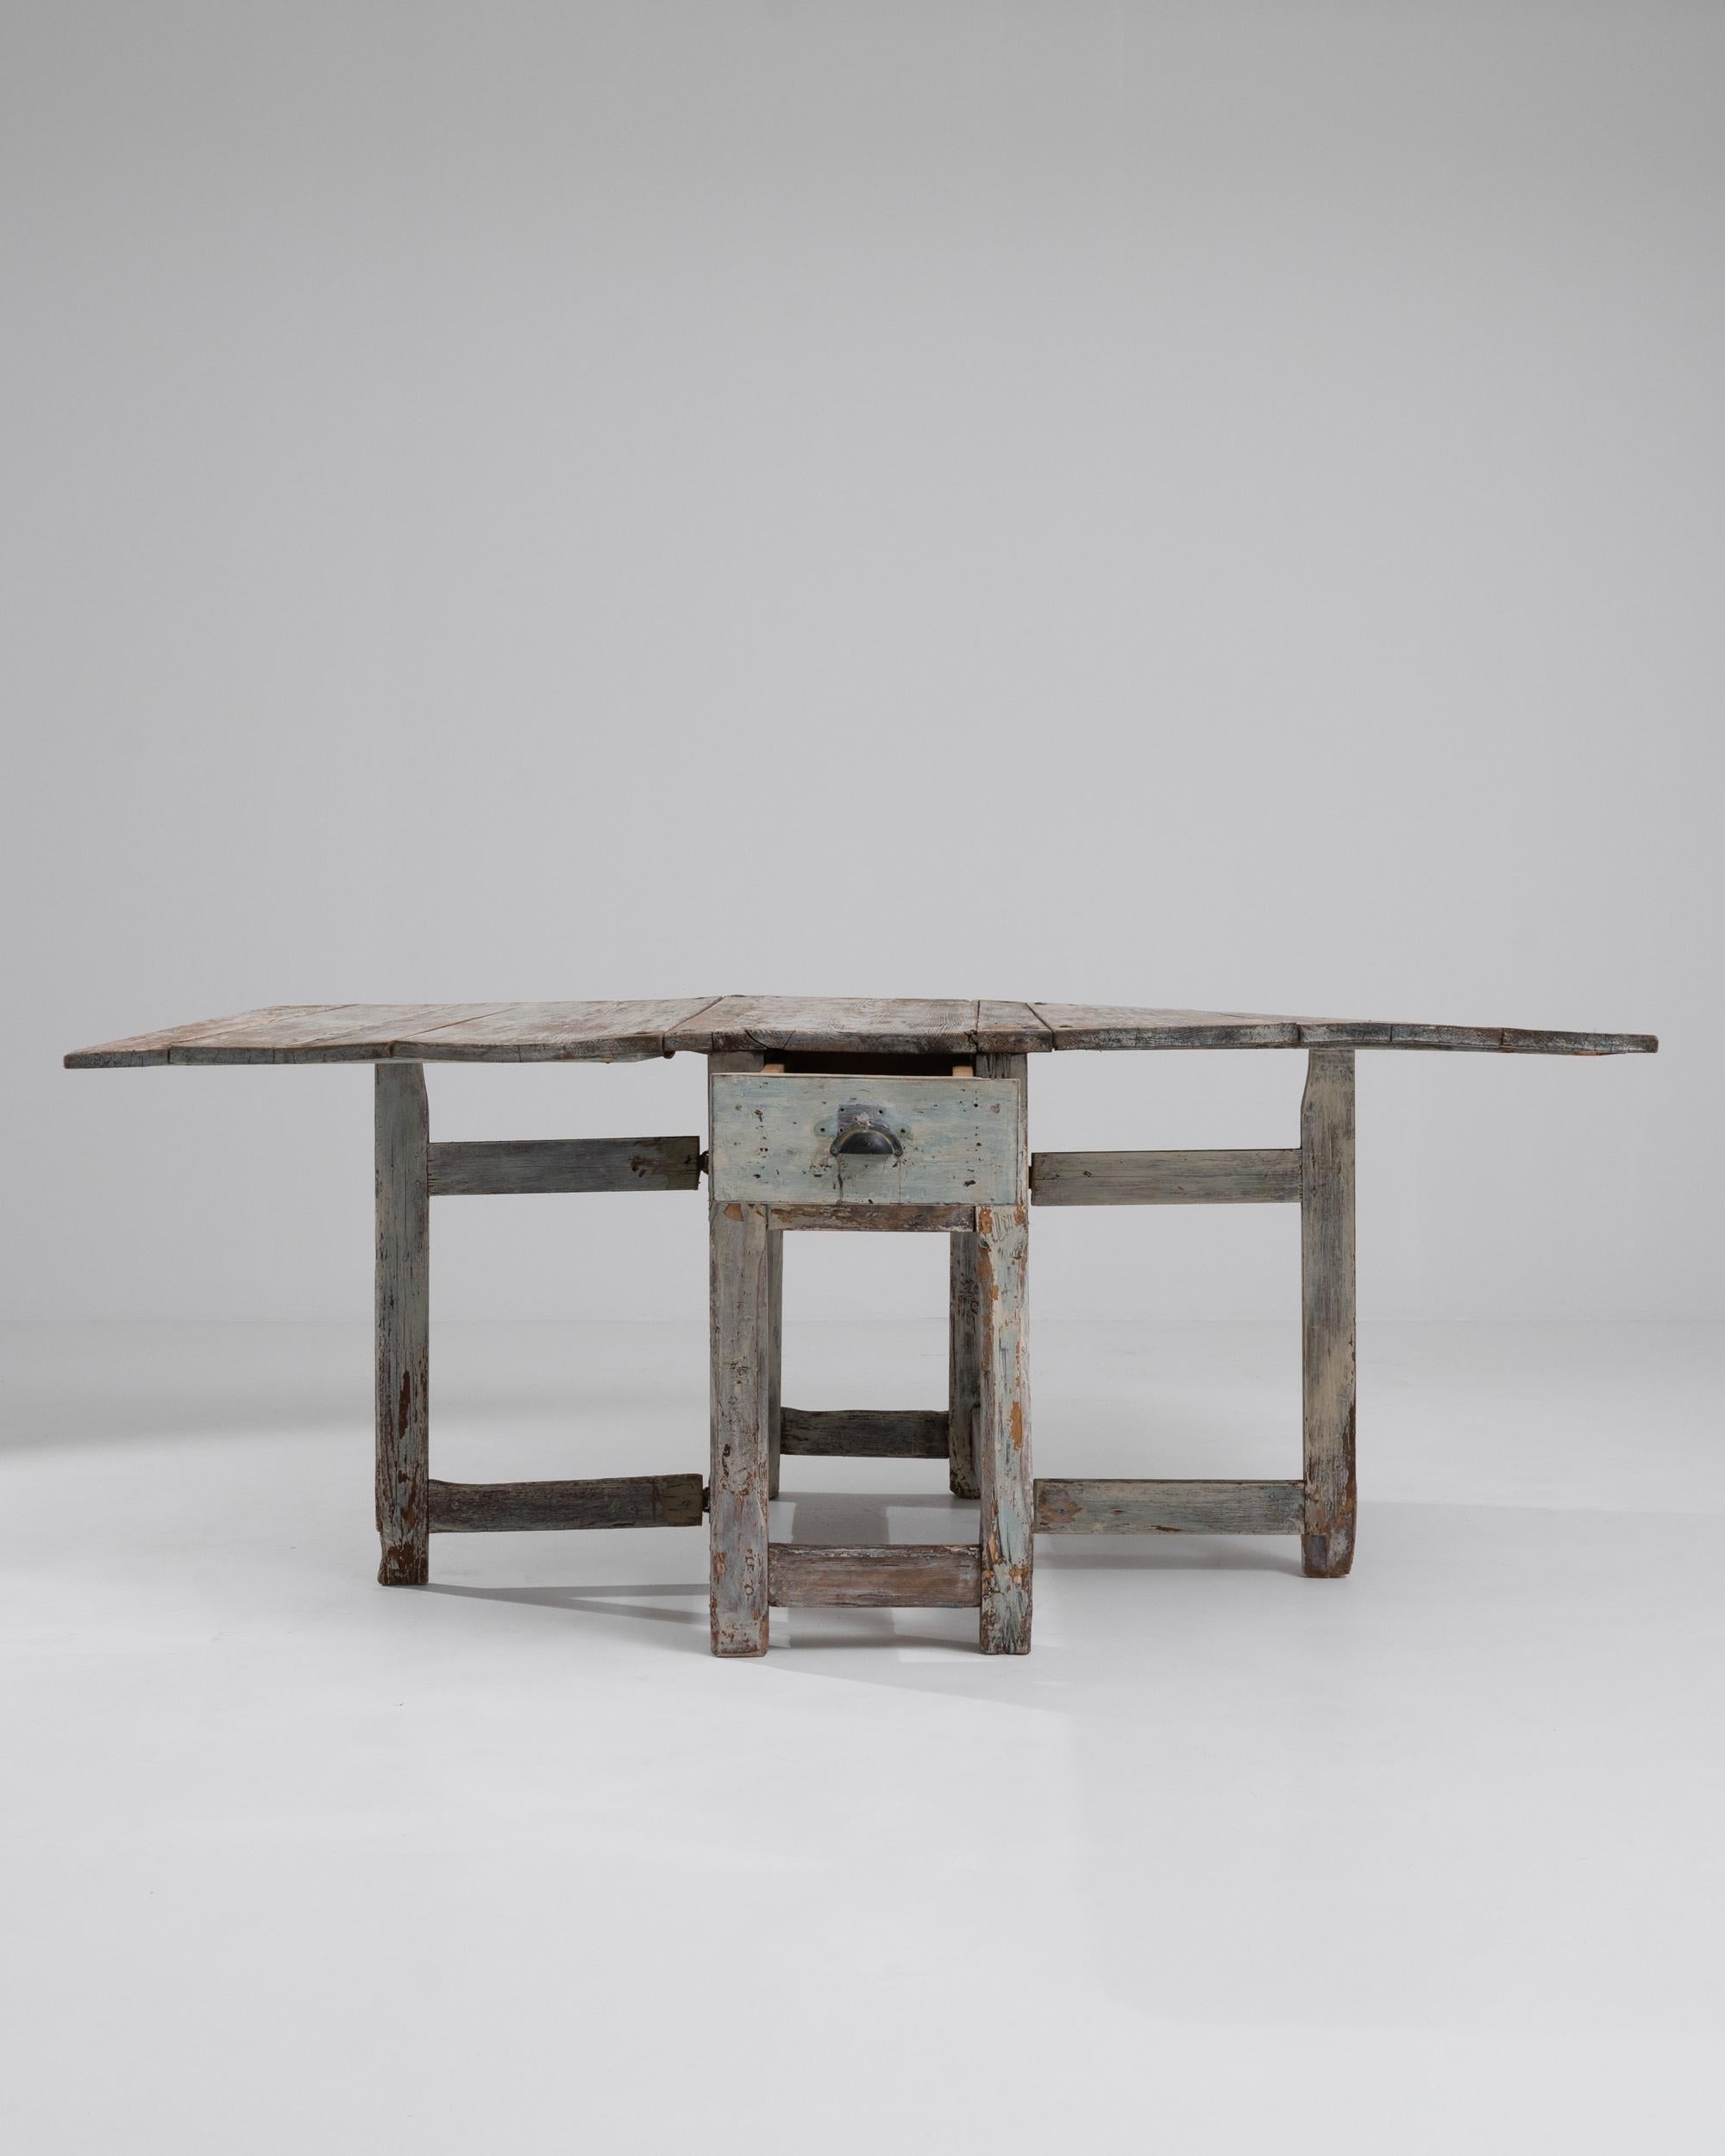 Dieser rustikale Holztisch, der um 1800 in Schweden hergestellt wurde, strotzt vor Persönlichkeit. Das Design ist einfach und doch vielseitig: Die breiten Flügel der Holztischplatte können geschlossen werden, um eine schmale Einheit zu bilden, oder